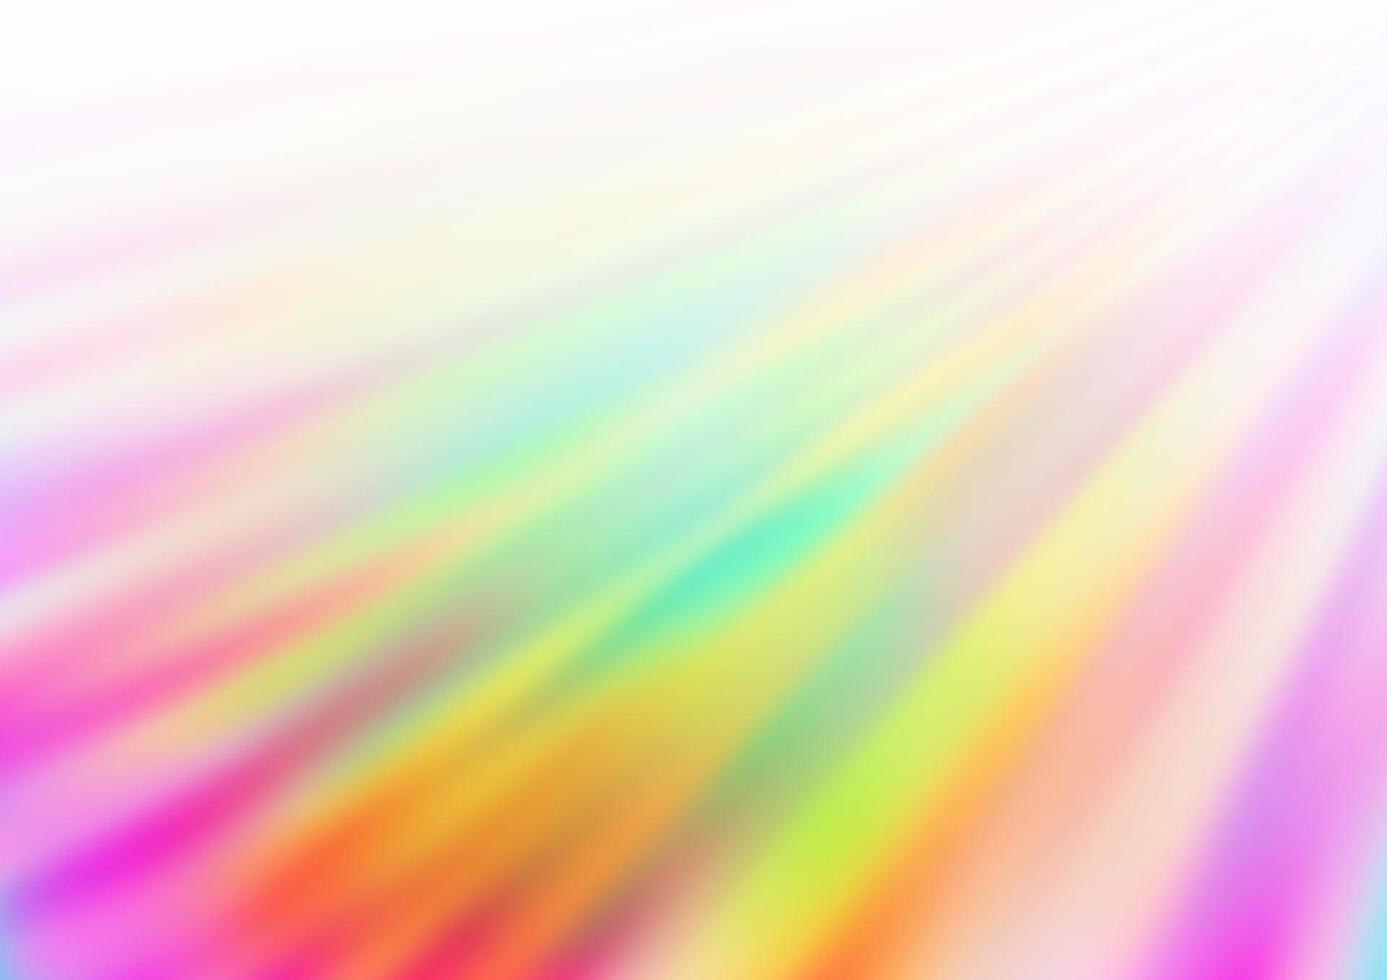 ljus mångfärgad, regnbågens vektorstruktur med färgade linjer. vektor